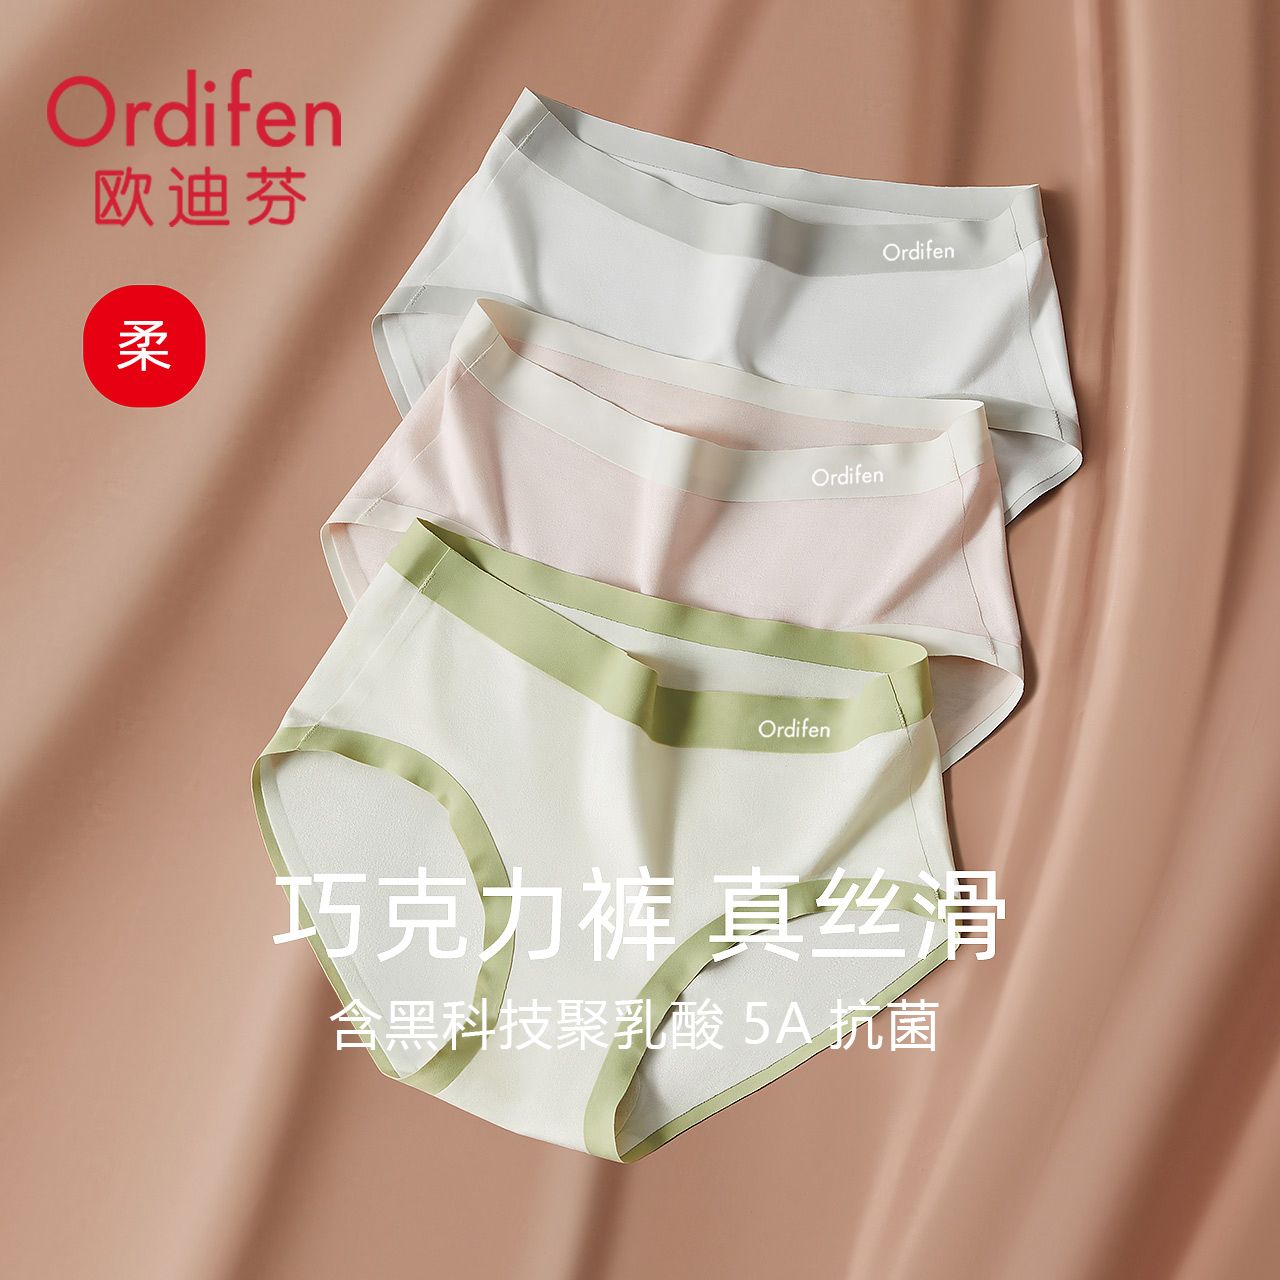 Ordifen 欧迪芬 女士无痕透气三角内裤 3条装 55.9元